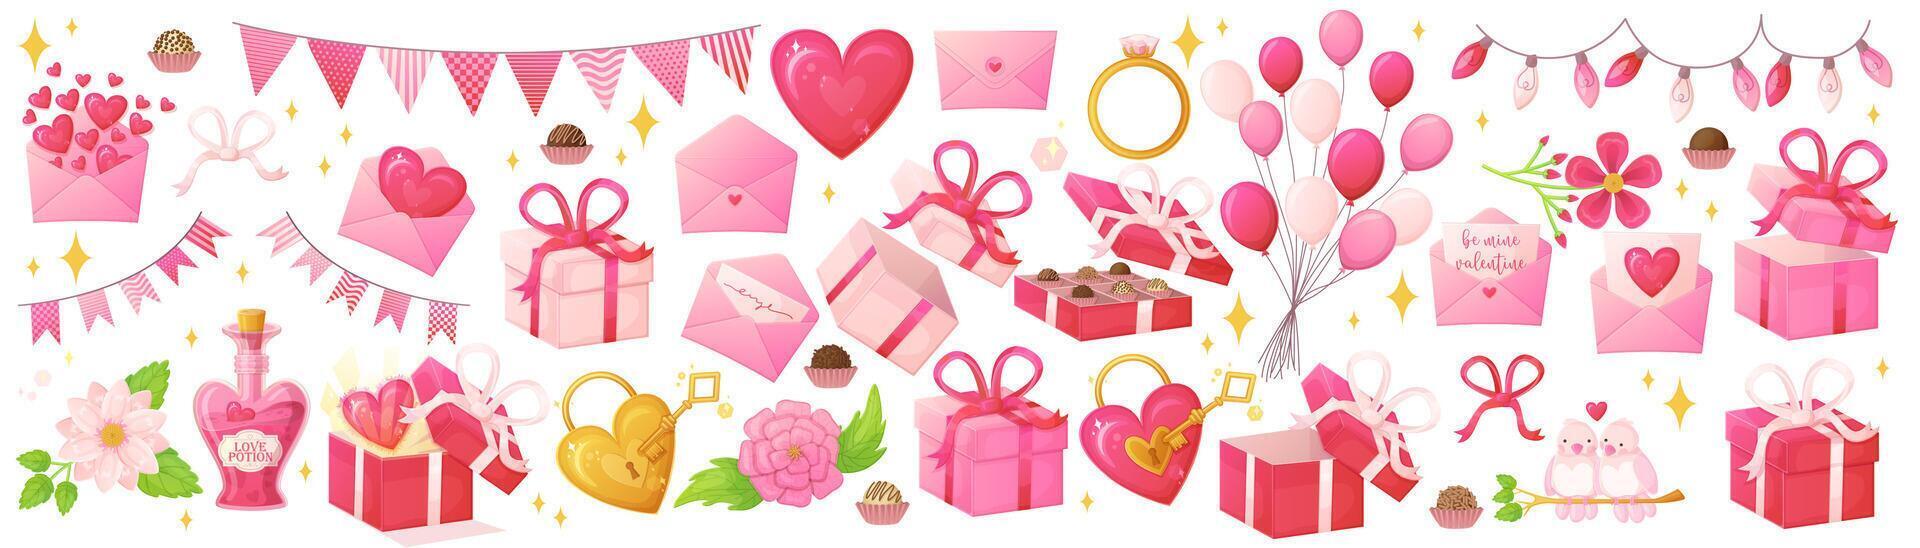 rosa valentine dag objekt uppsättning. romantisk dekoration symboler i realistisk tecknad serie stil. vektor